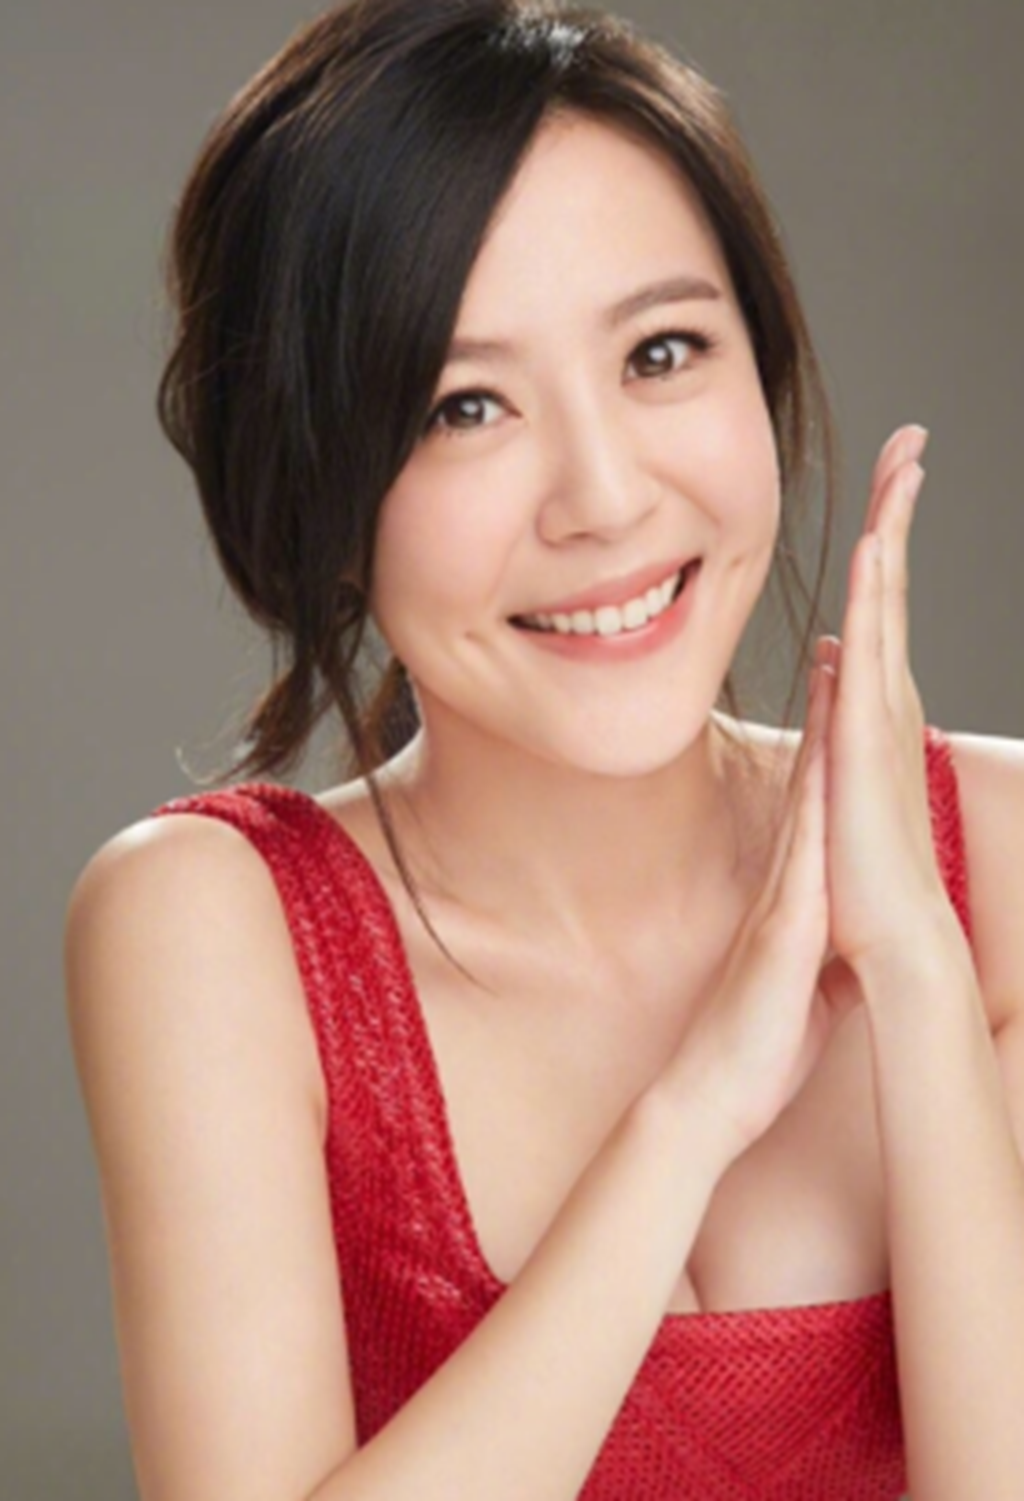 李金铭,1985年11月21日出生于山东省济南市章丘区,中国女演员,主持人